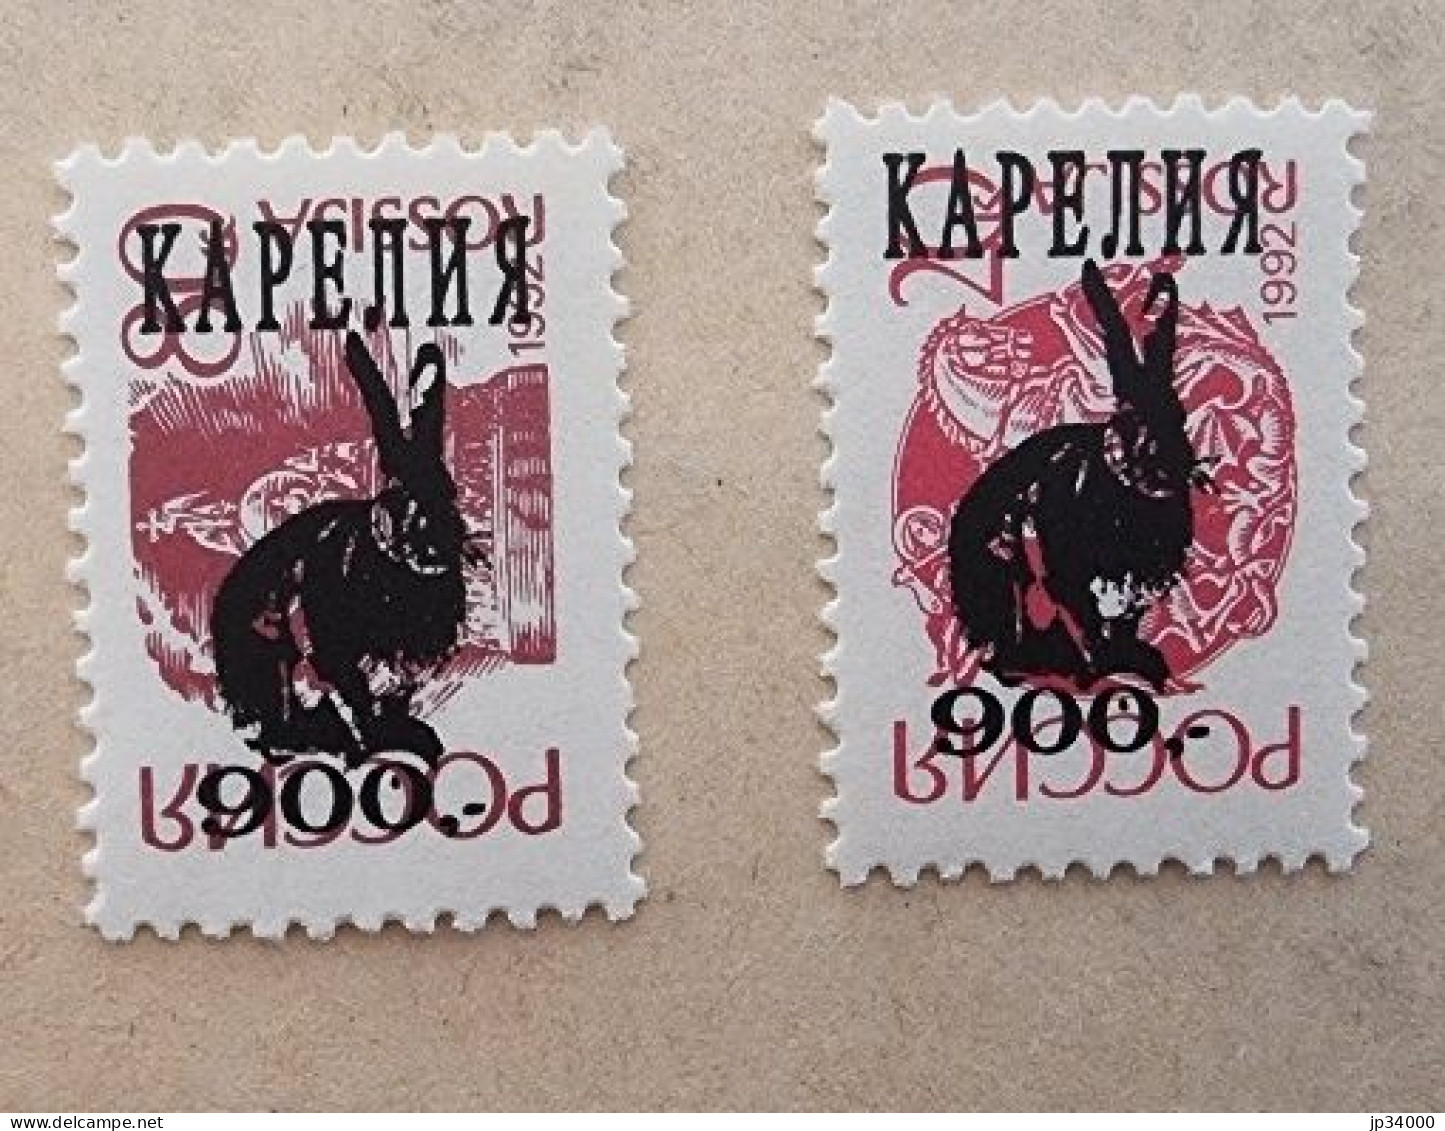 RUSSIE Lapins, Lapin, Rabbit, Conejo. 2 Valeurs Dentelées (1992) ** Neuf Sans Charnière - Rabbits